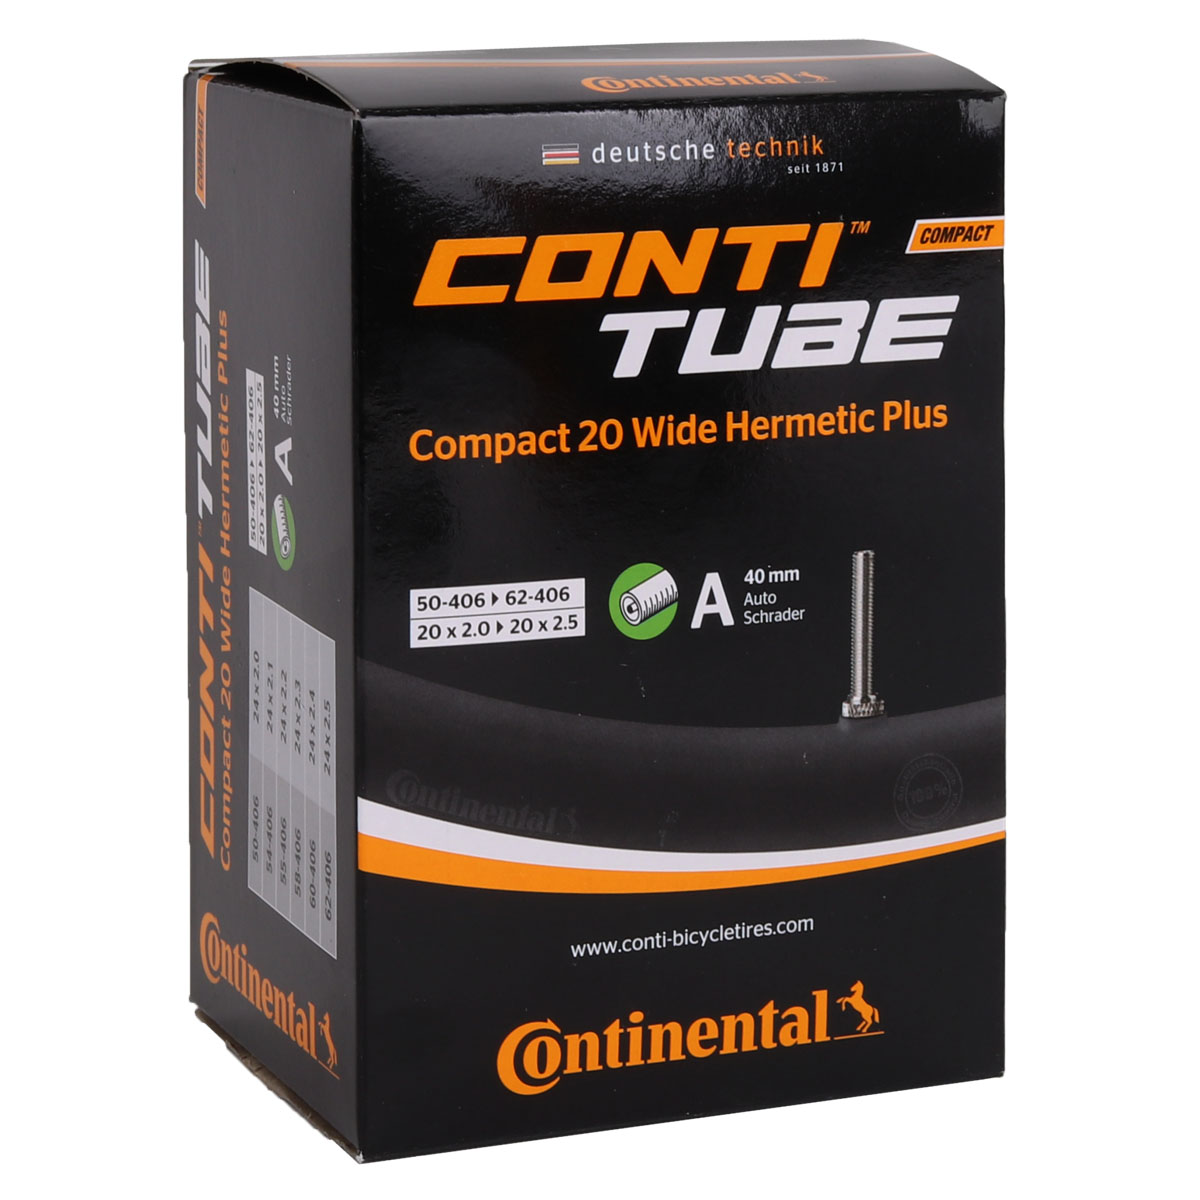 Bild von Continental Compact 20 Wide Hermetic Plus Schlauch